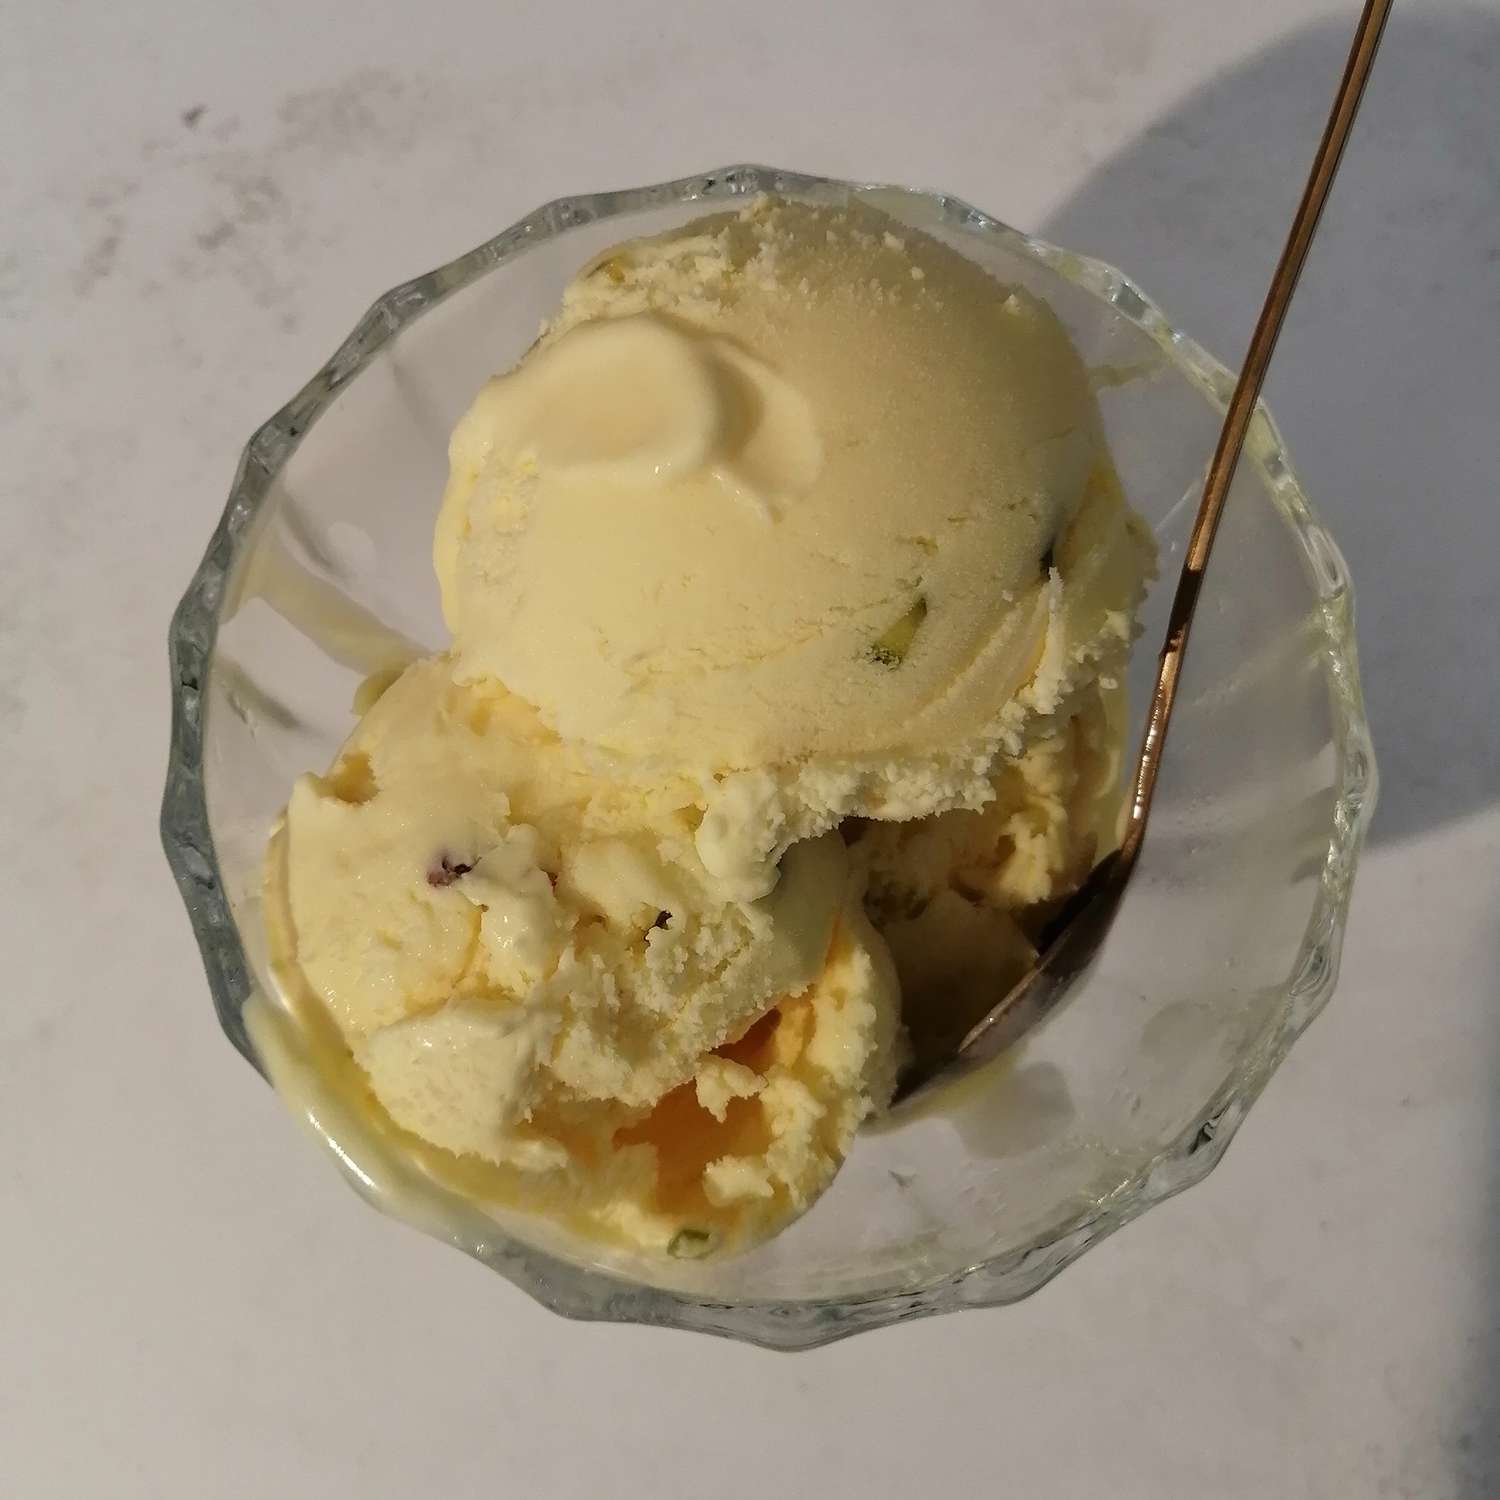 bastani sonati ice cream in a bowl